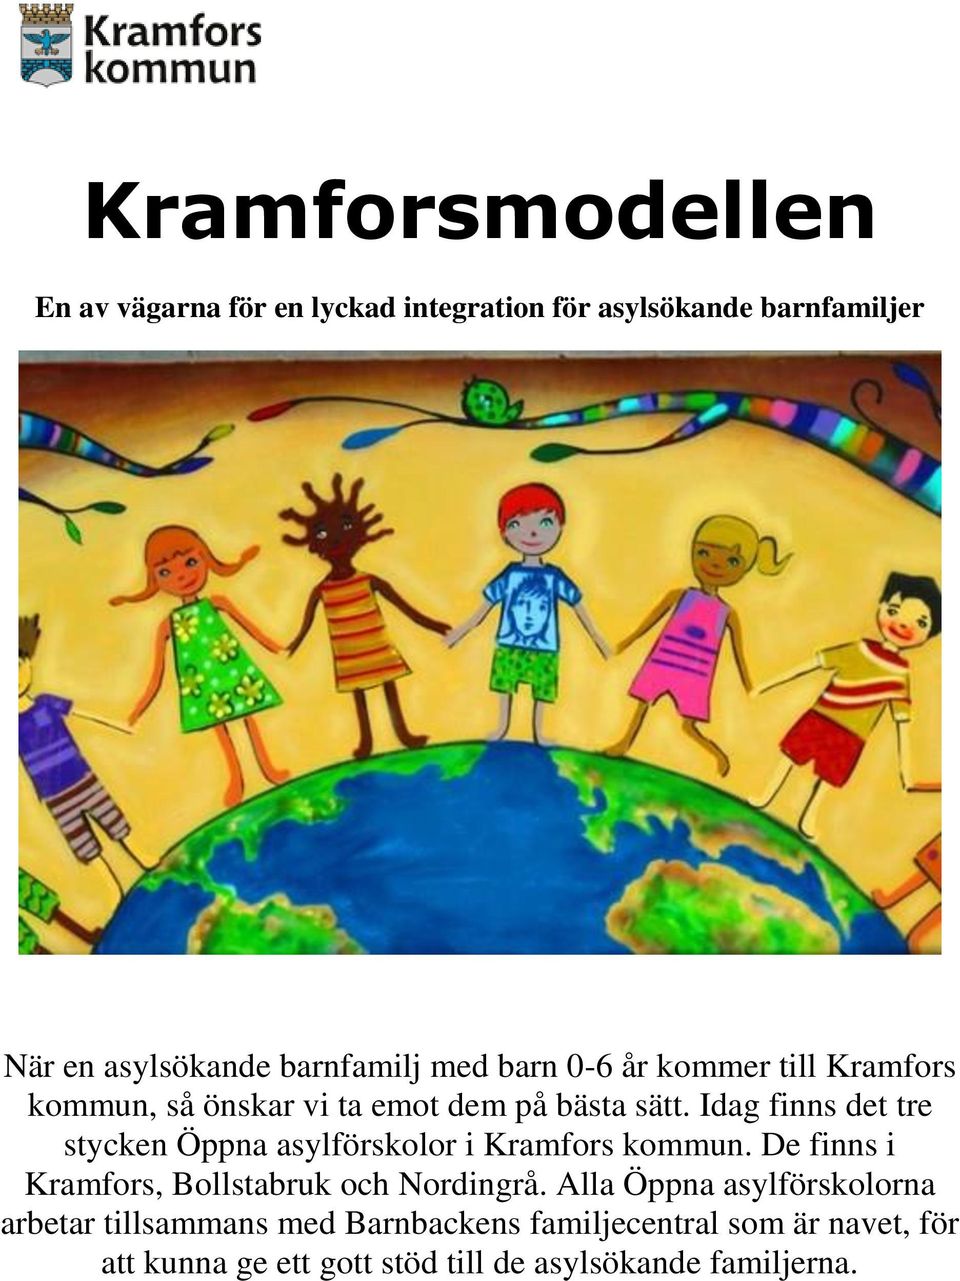 Idag finns det tre stycken Öppna asylförskolor i Kramfors kommun. De finns i Kramfors, Bollstabruk och Nordingrå.